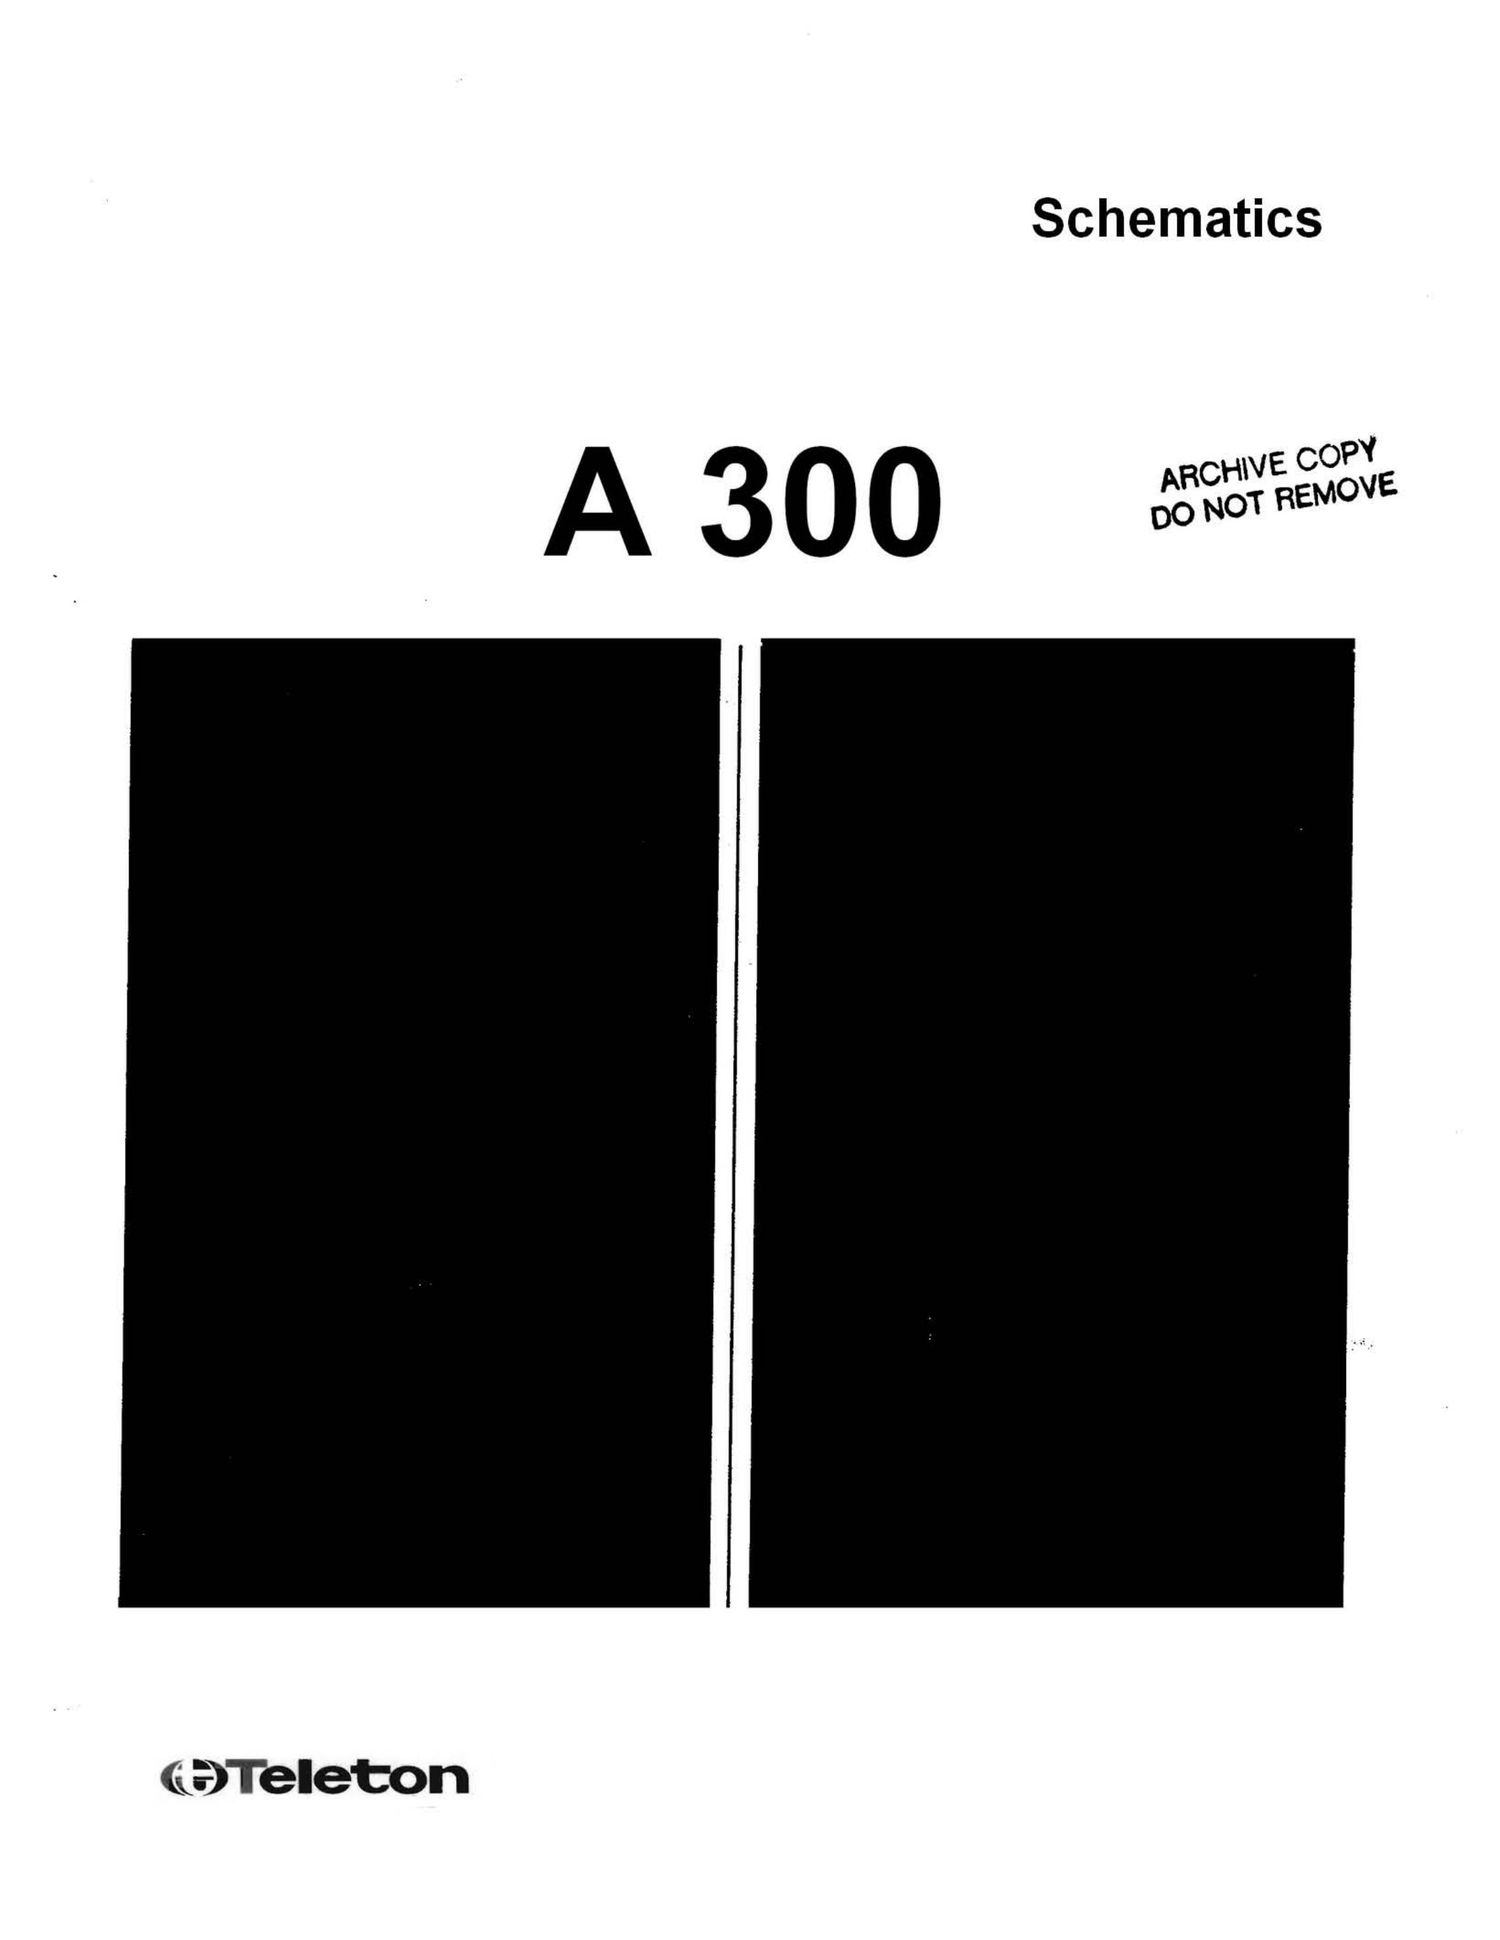 Teleton A300 Schematics